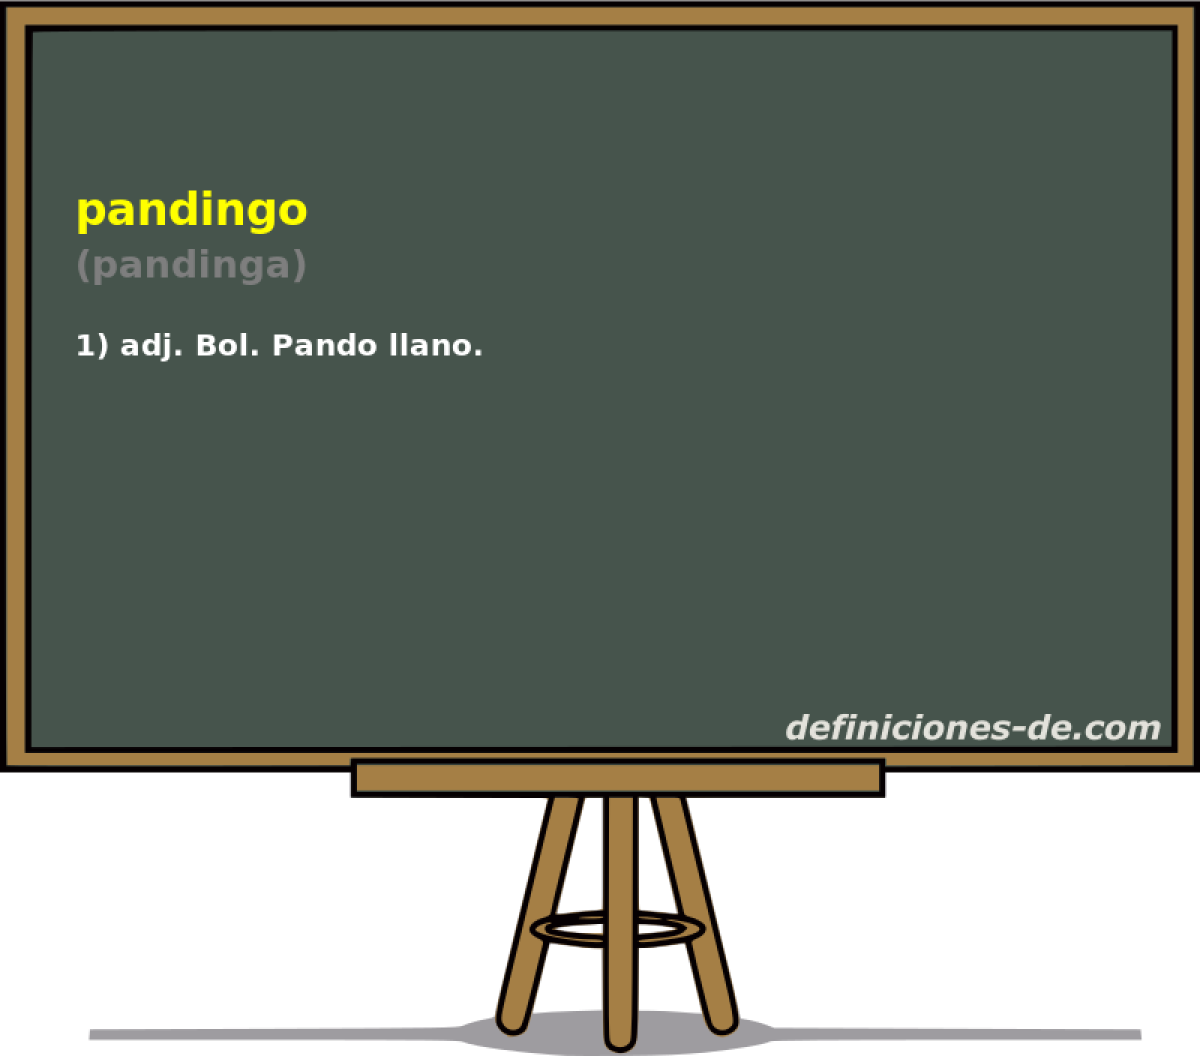 pandingo (pandinga)